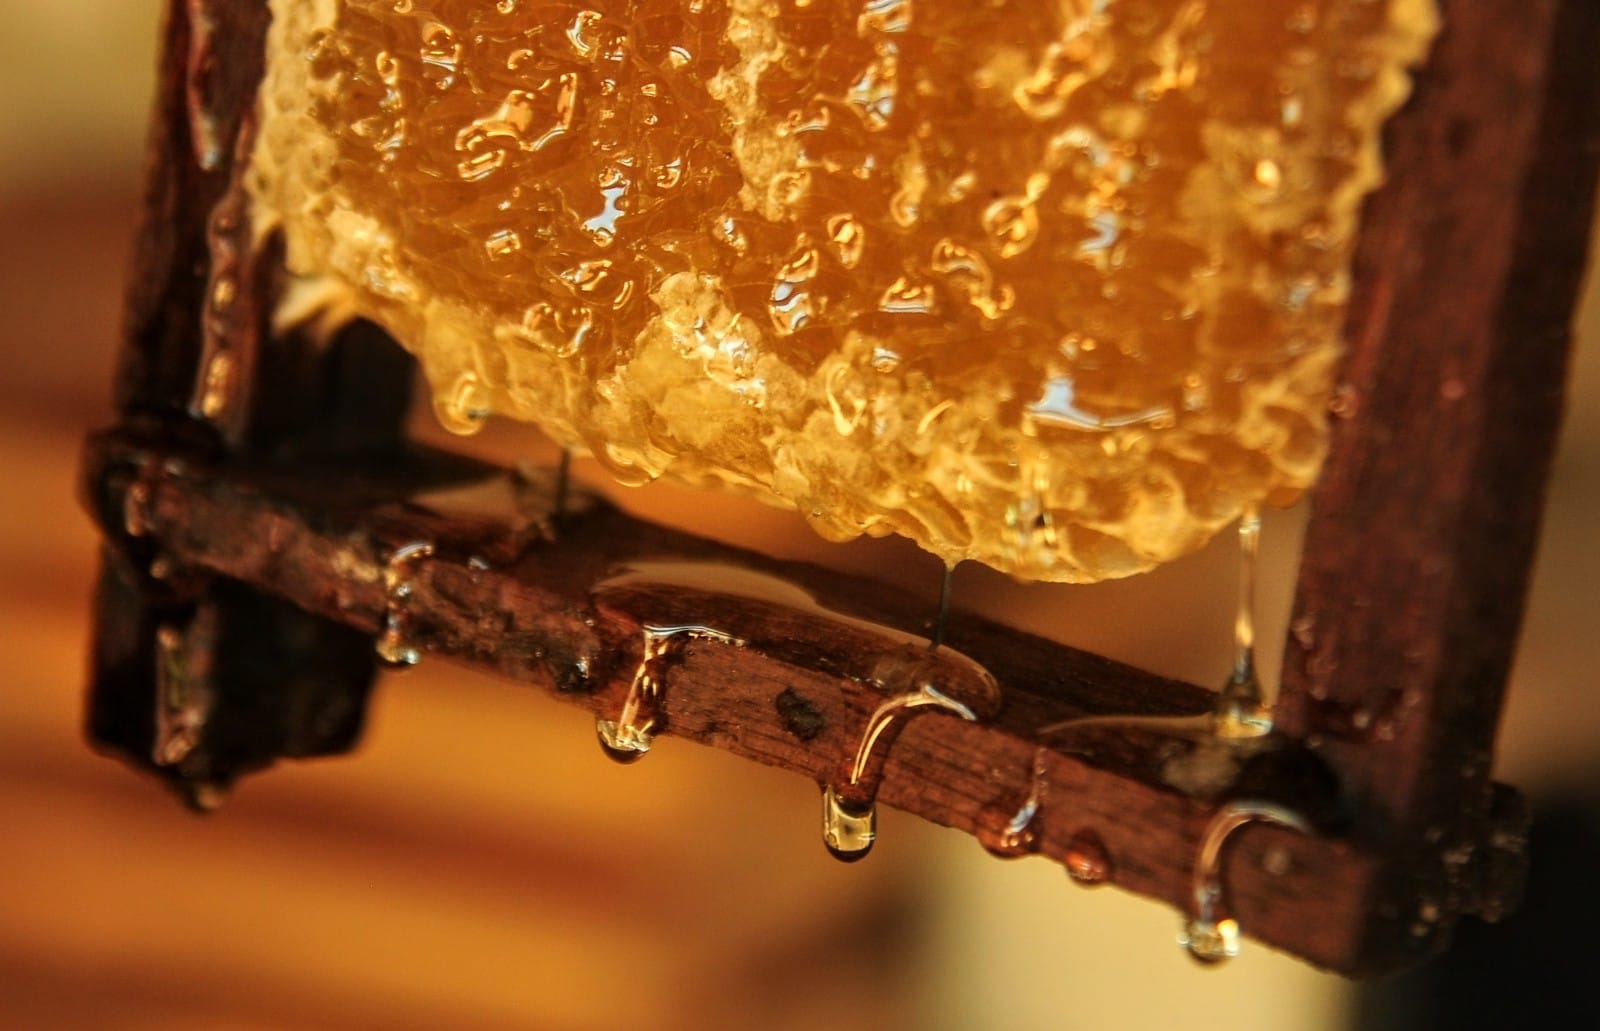 Programa “Mossoró Rural” incentiva produção de mel no campo